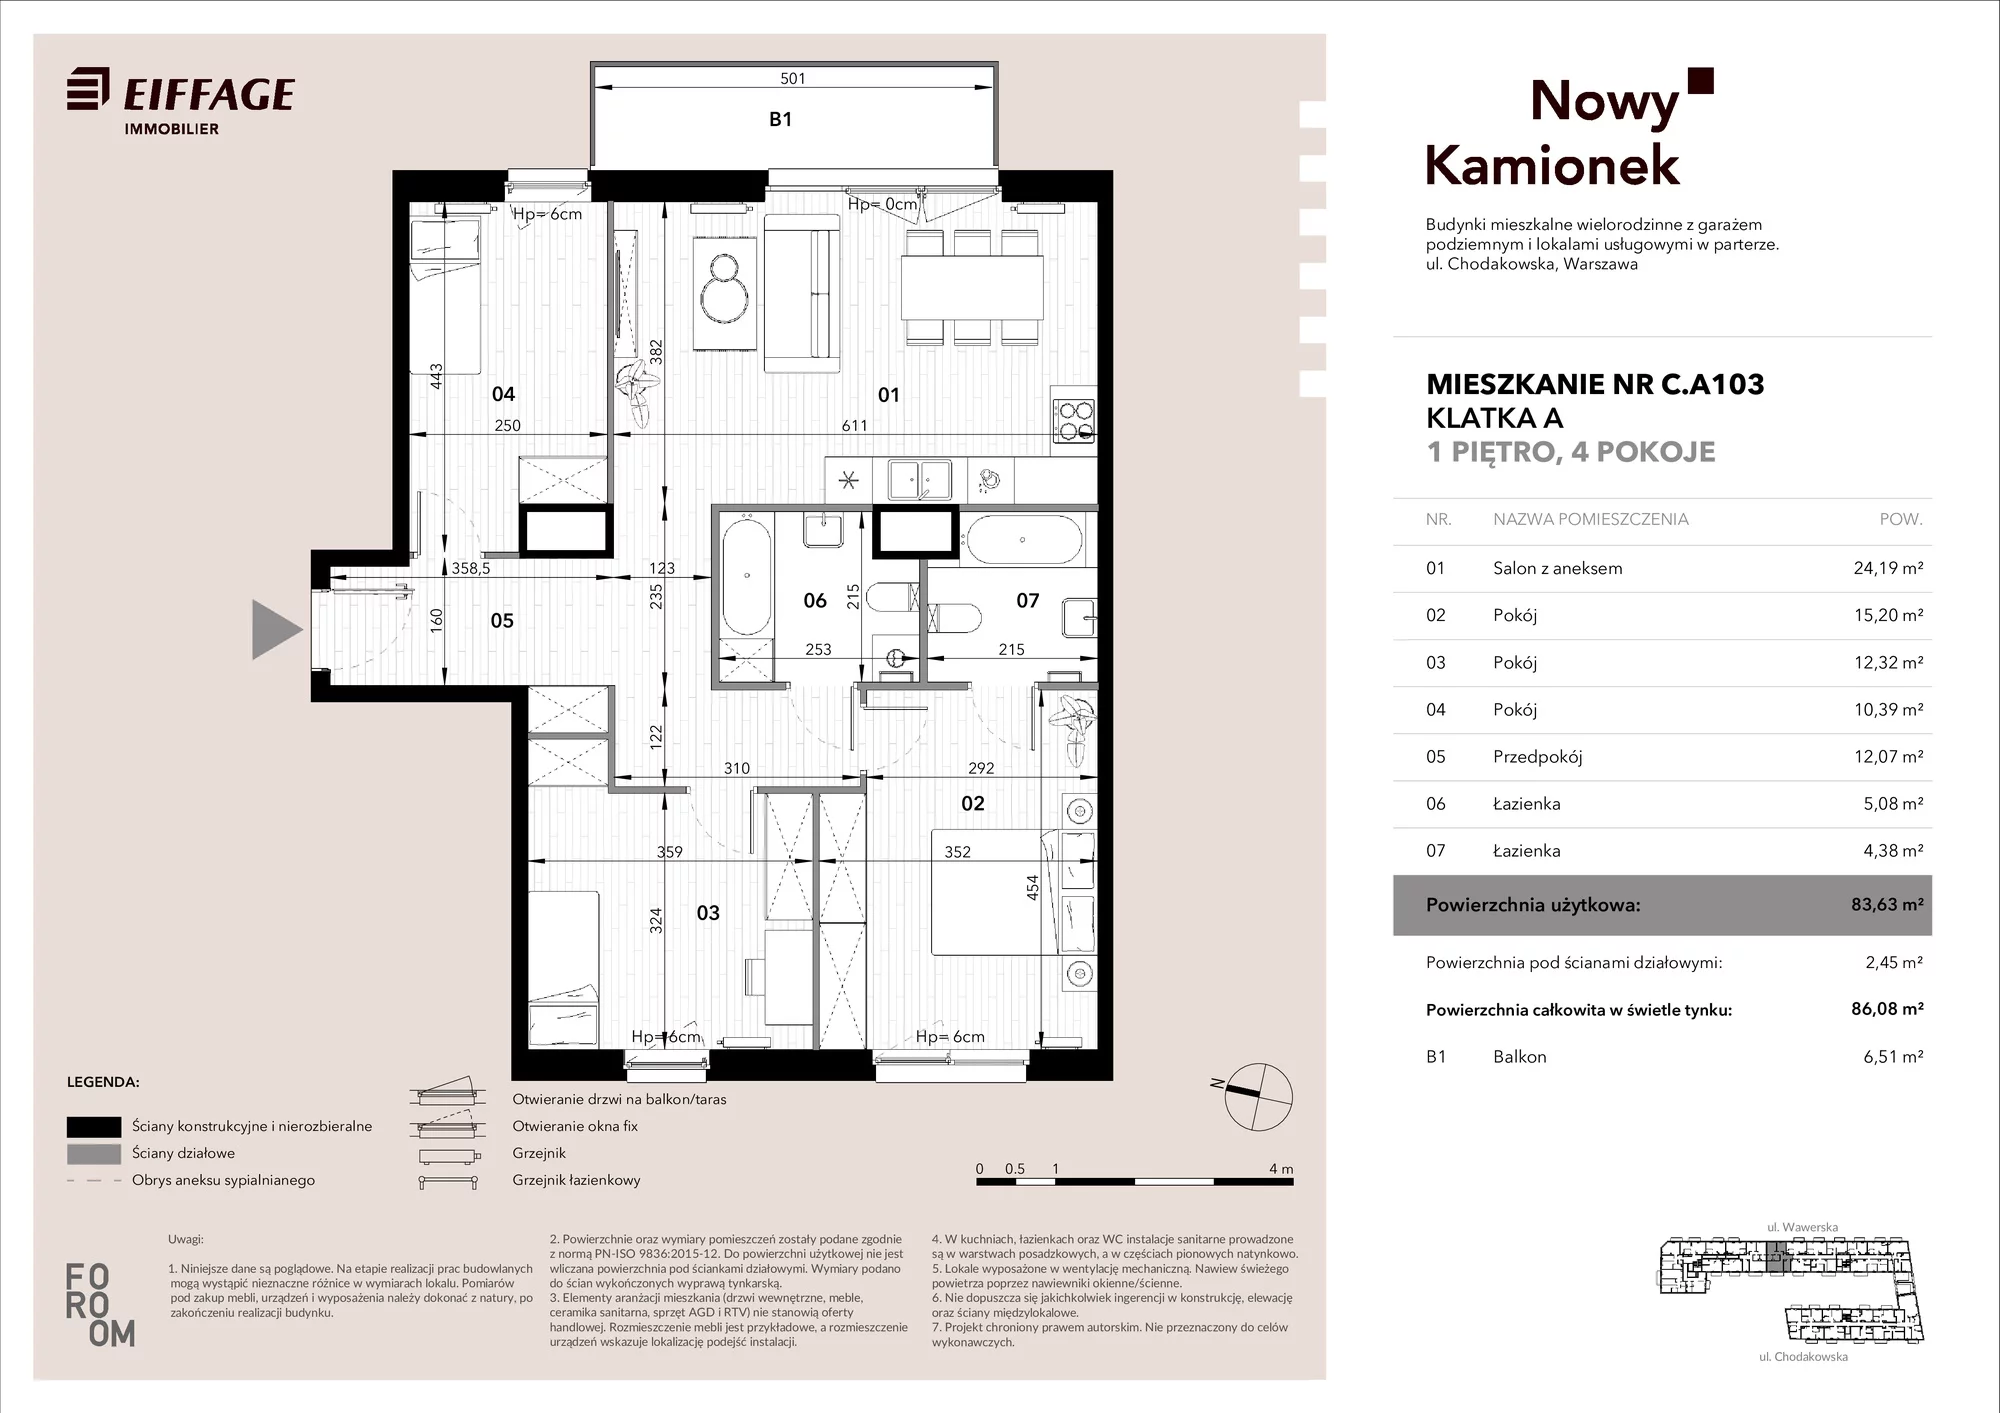 Mieszkanie 83,63 m², piętro 1, oferta nr C.A103, Nowy Kamionek, Warszawa, Praga Południe, Kamionek, ul. Chodakowska